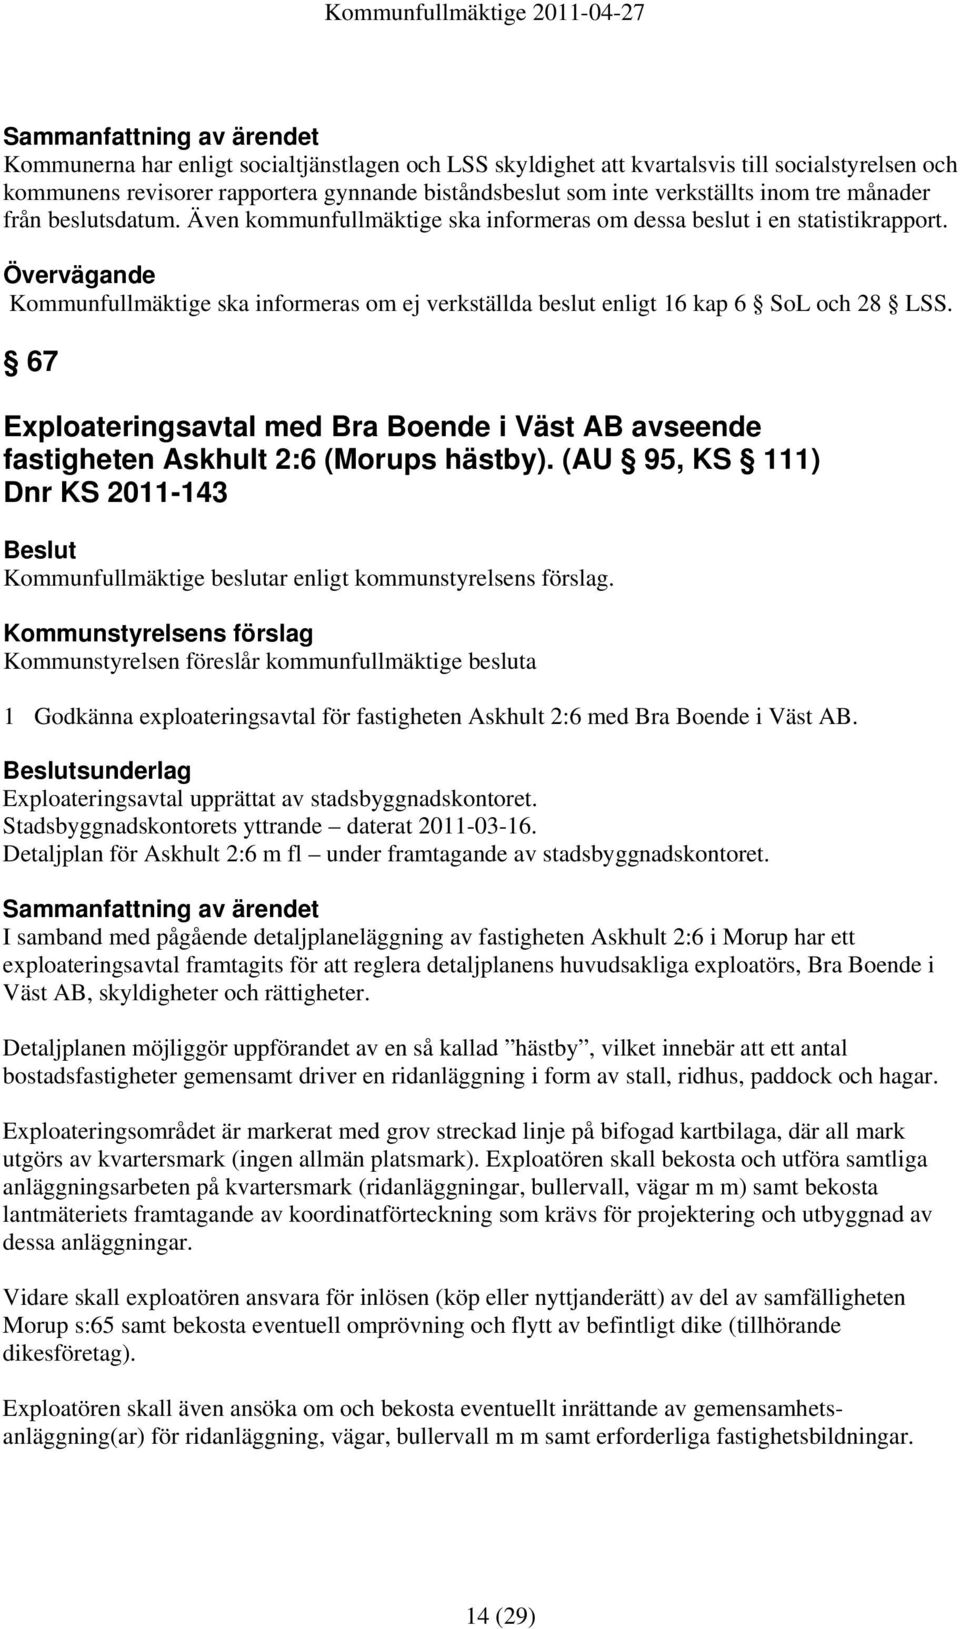 67 Exploateringsavtal med Bra Boende i Väst AB avseende fastigheten Askhult 2:6 (Morups hästby).